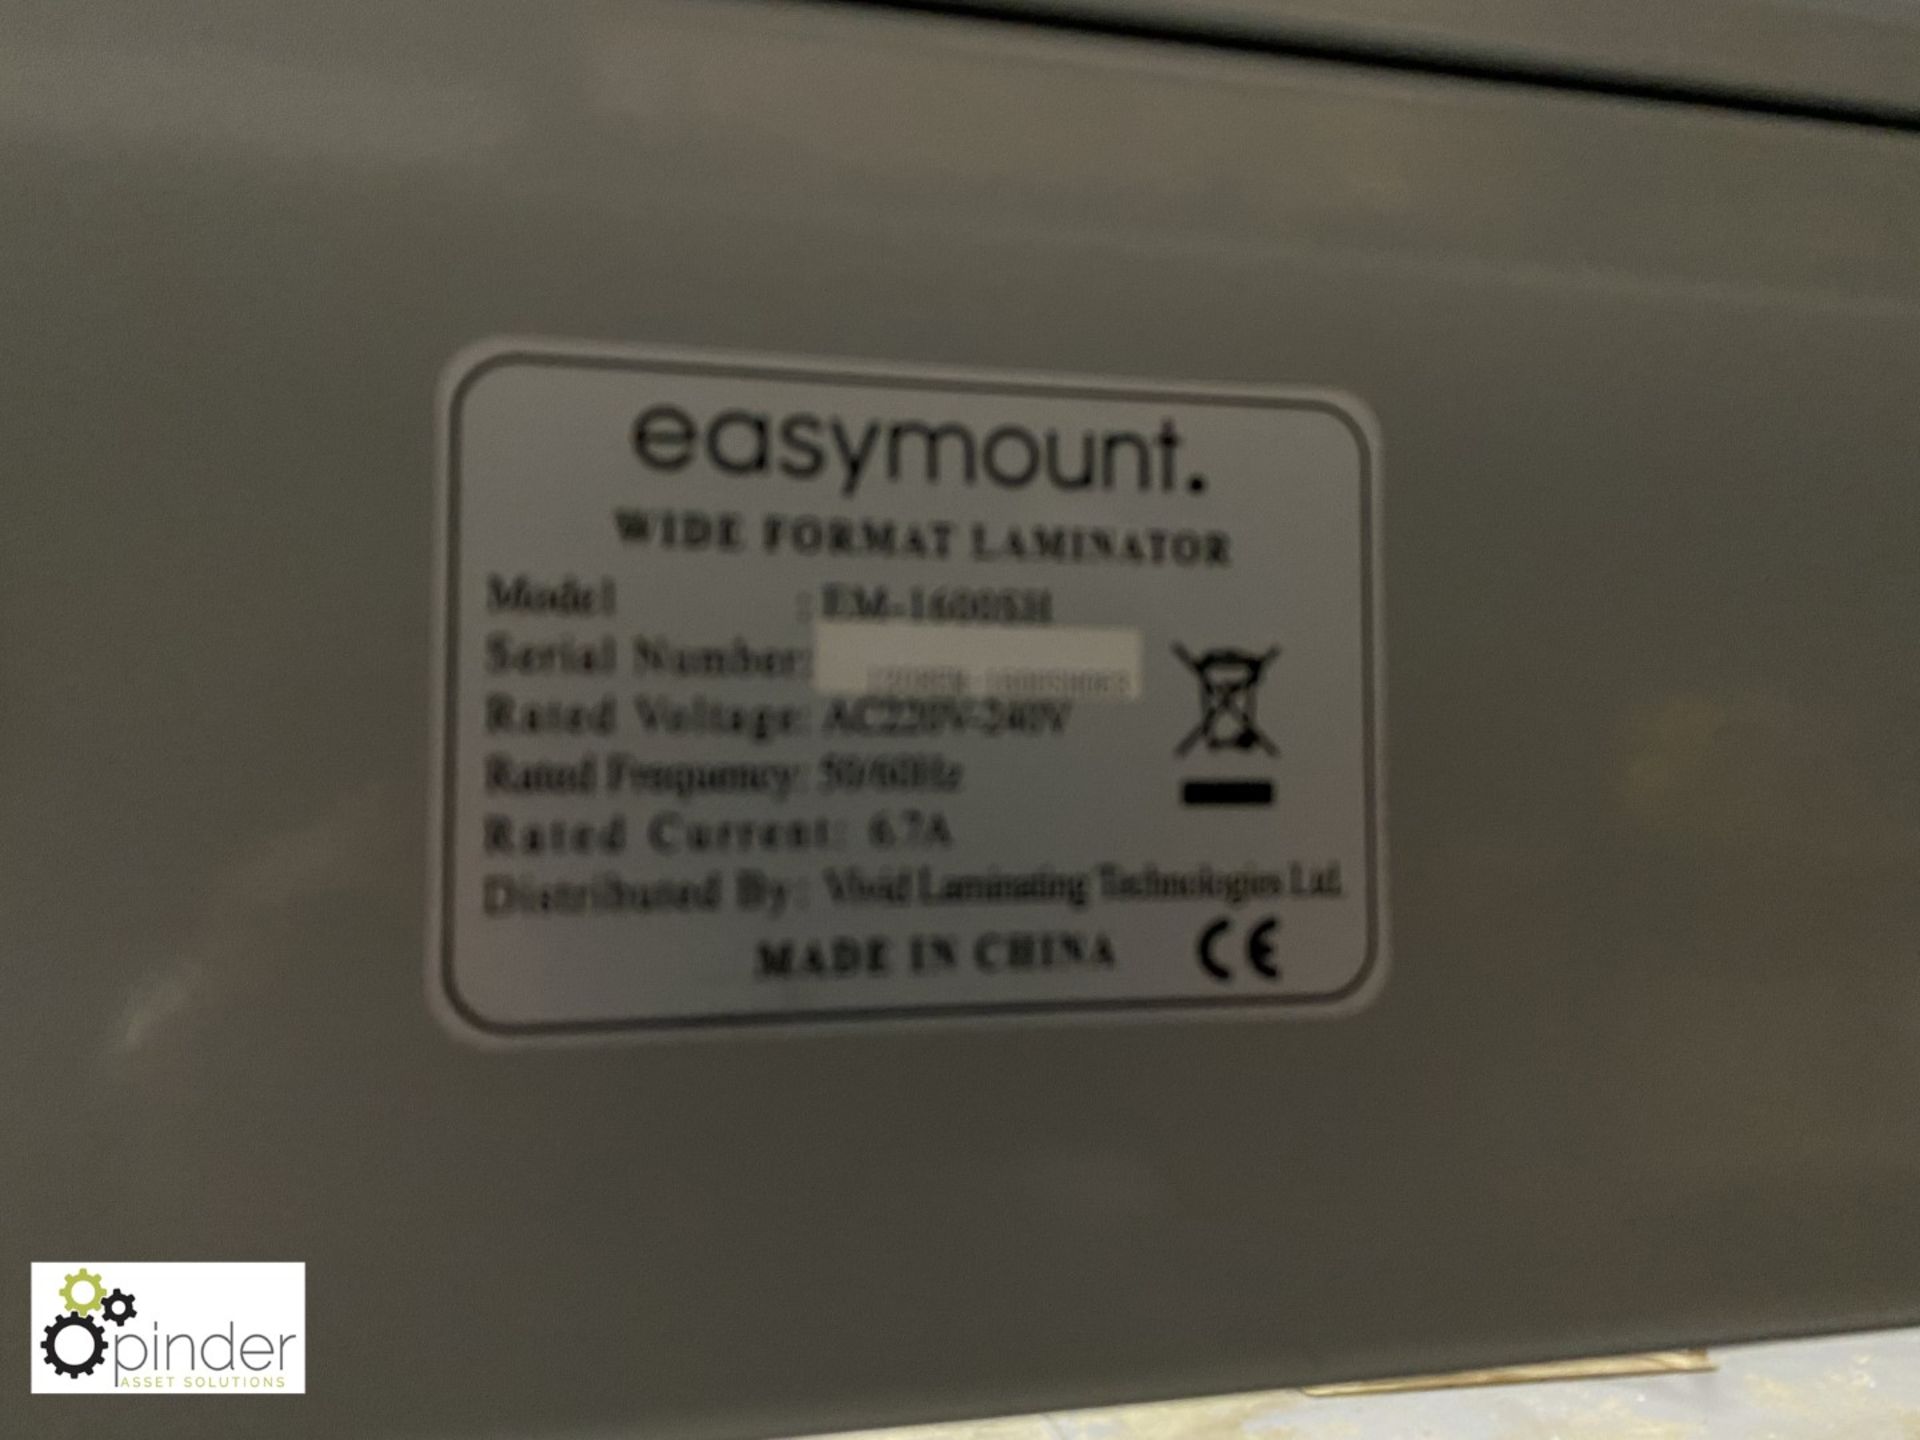 Easymount EM-1600SH Wide Format Laminator, 240volts, 1600mm width, serial number 1208EM 1600SH063 - Image 8 of 9